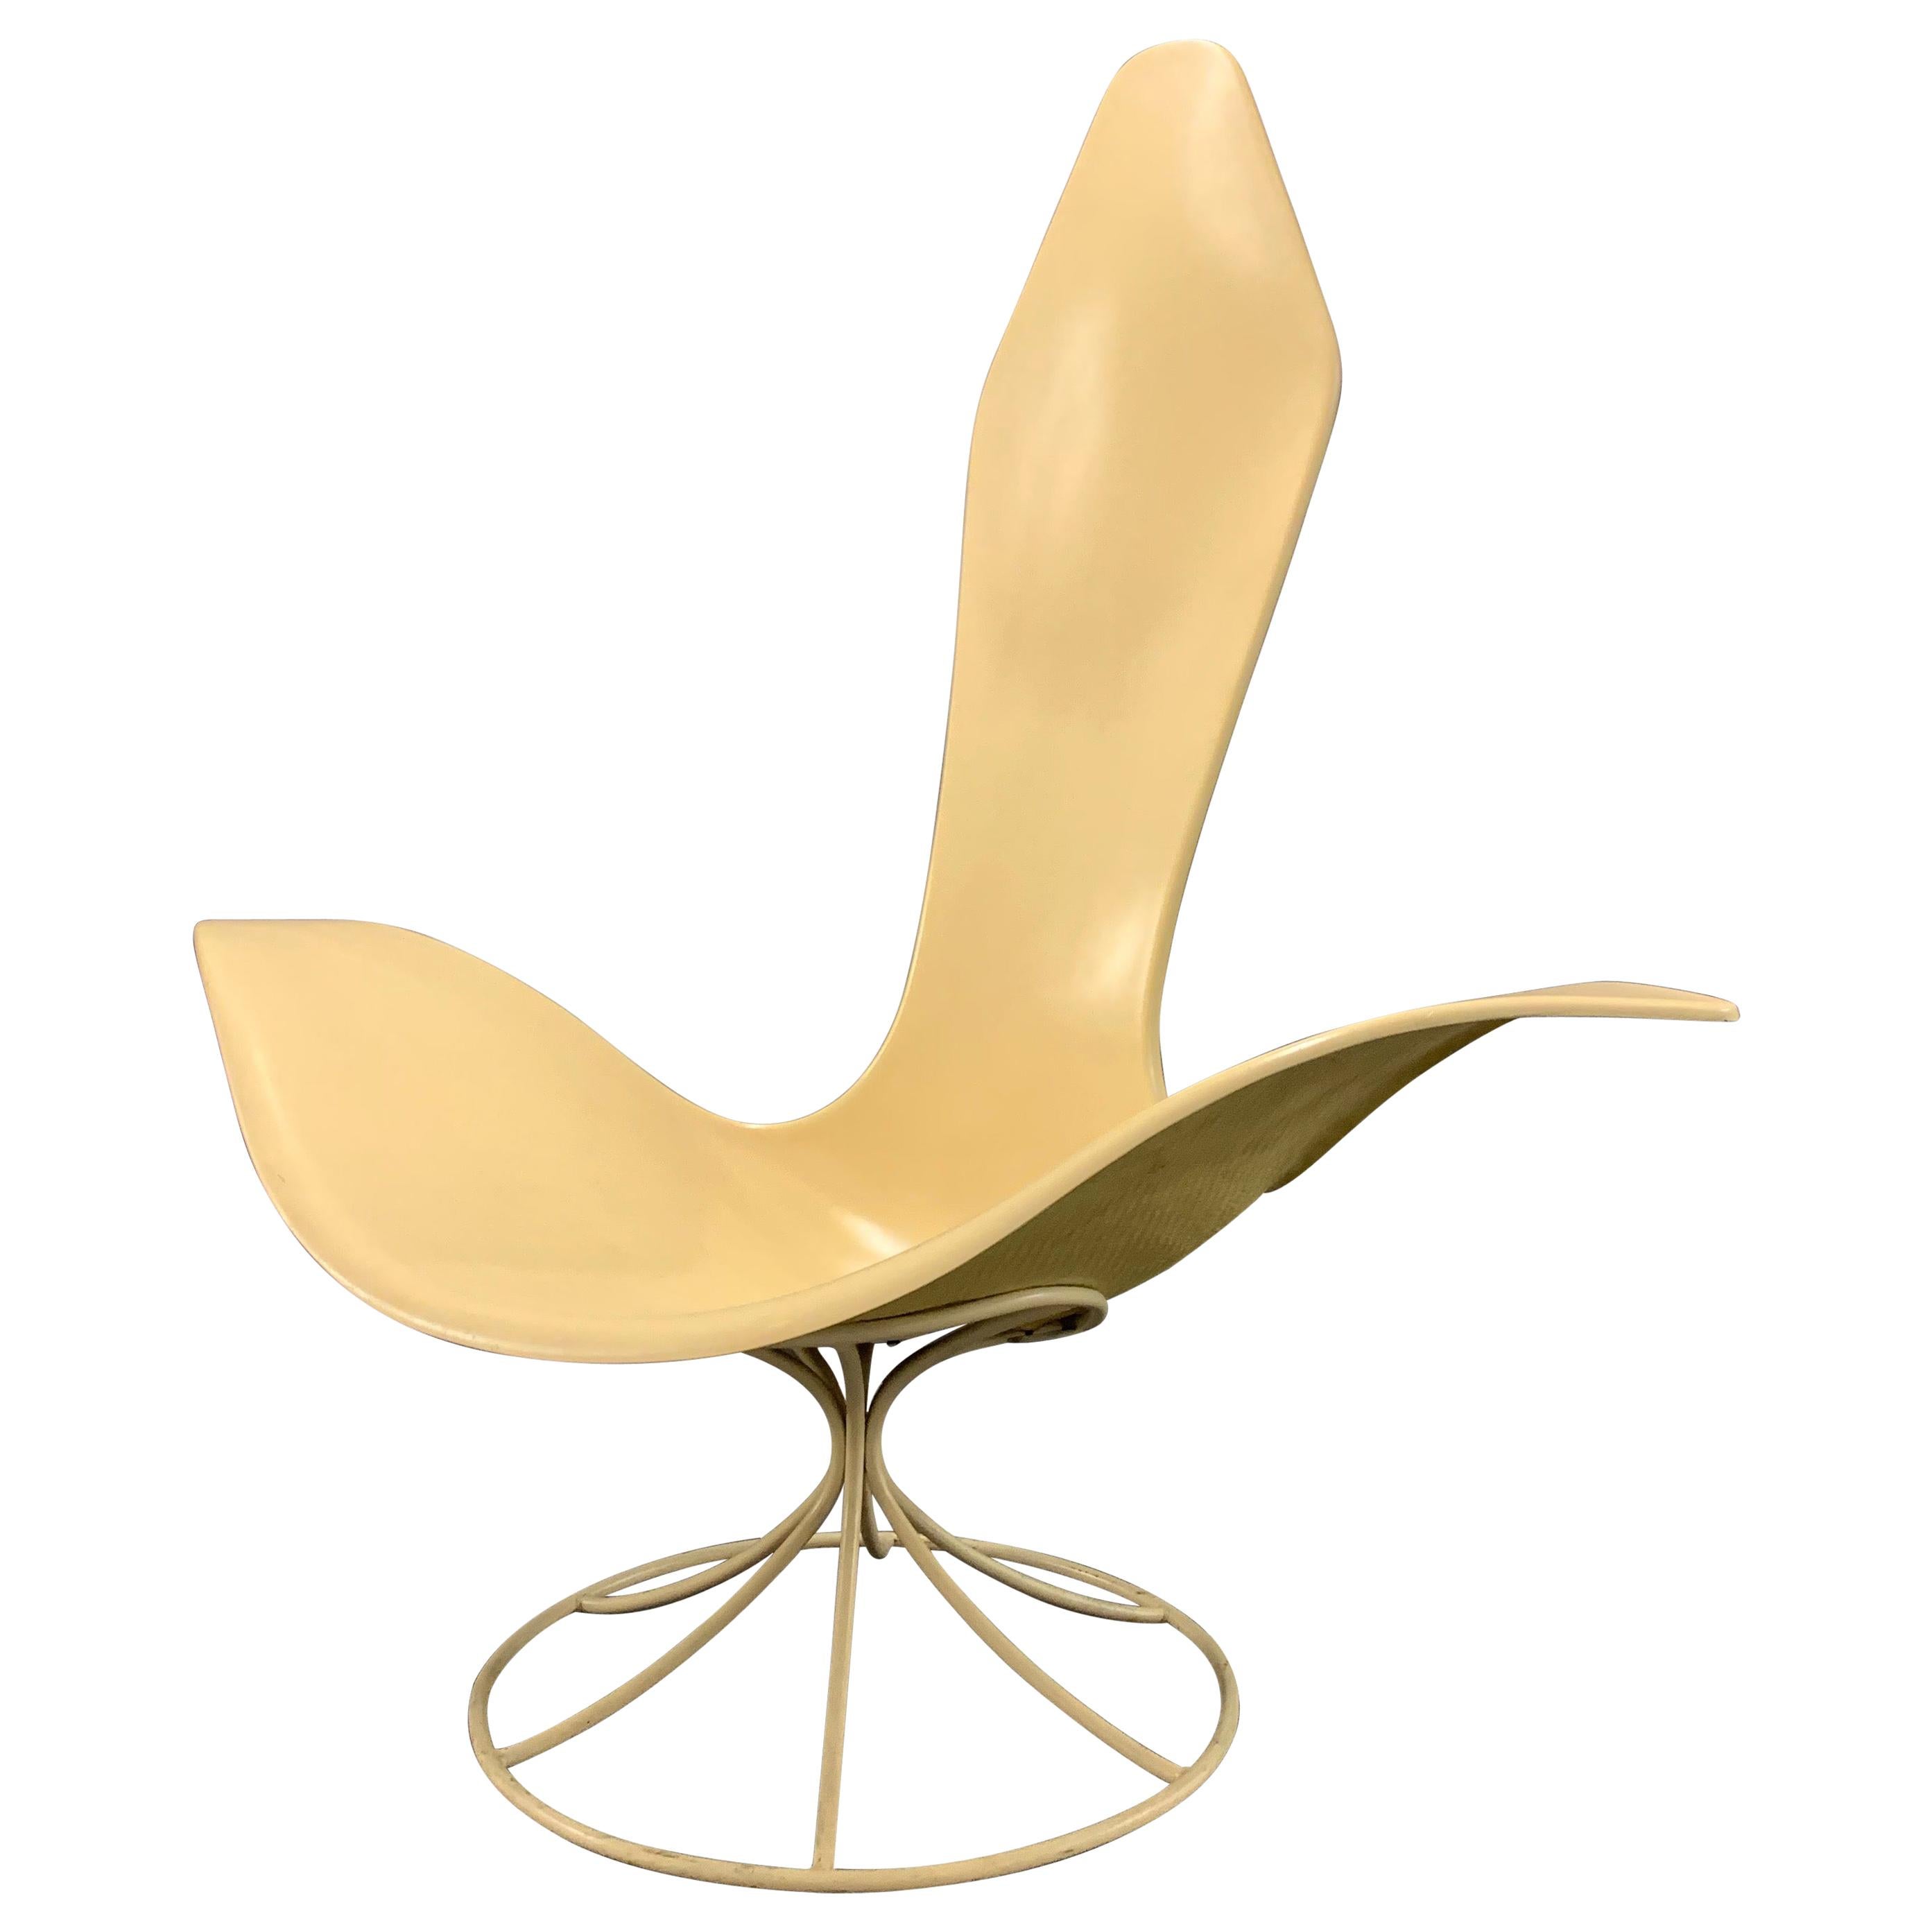 Erstaunlicher 120-LF Tulip Lounge Chair von Erwin und Estelle Laverne